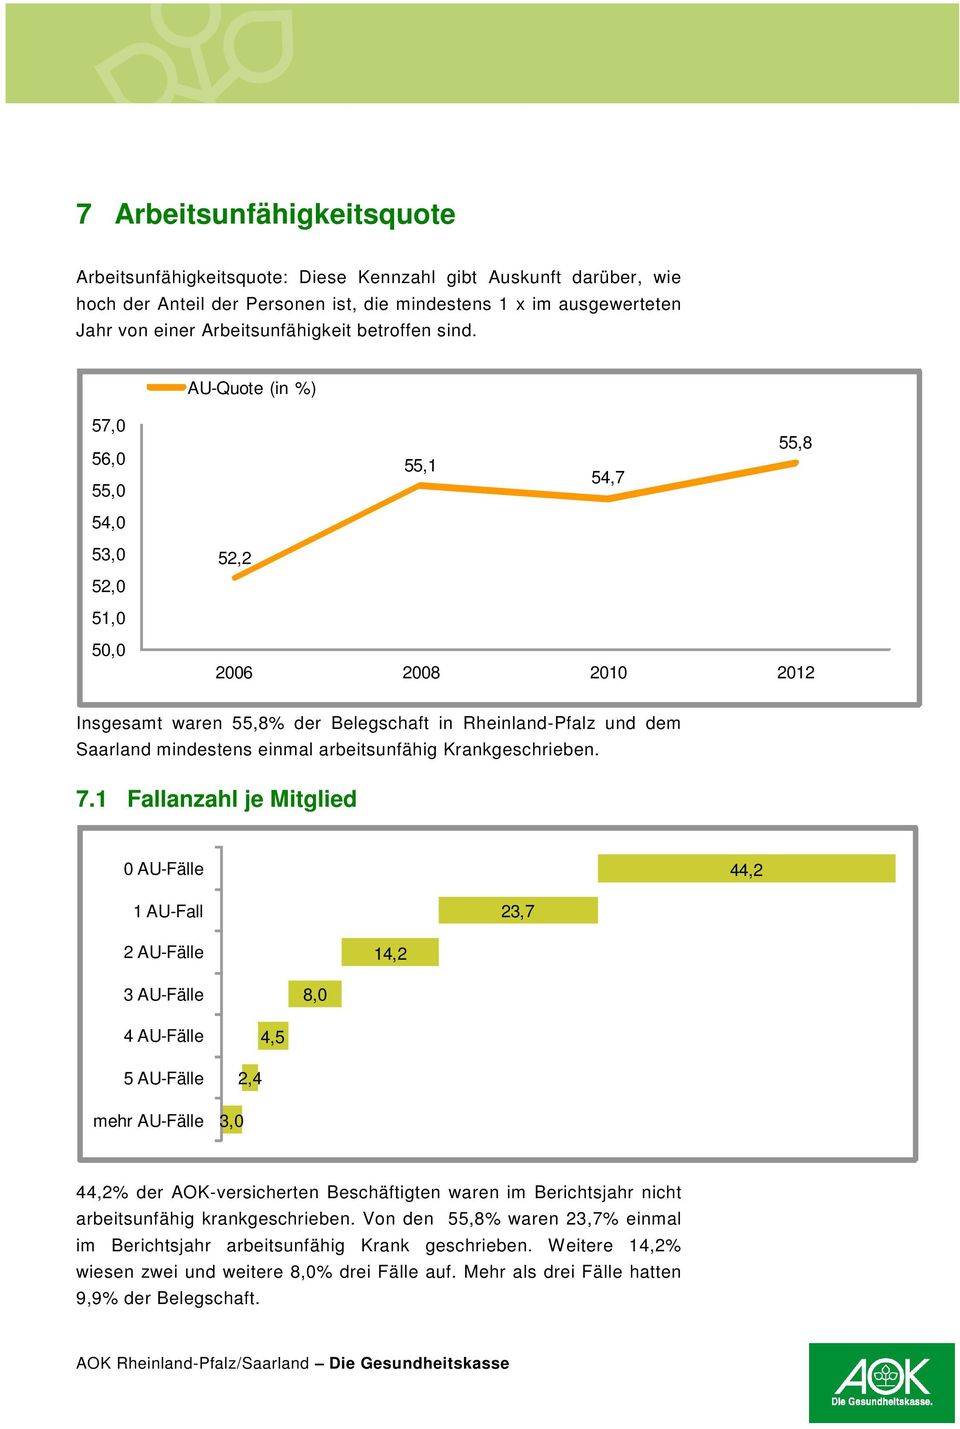 AU-Quote (in %) 57,0 56,0 55,0 55,1 54,7 55,8 54,0 53,0 52,0 52,2 51,0 5 2006 2008 2010 2012 Insgesamt waren 55,8% der Belegschaft in Rheinland-Pfalz und dem Saarland mindestens einmal arbeitsunfähig